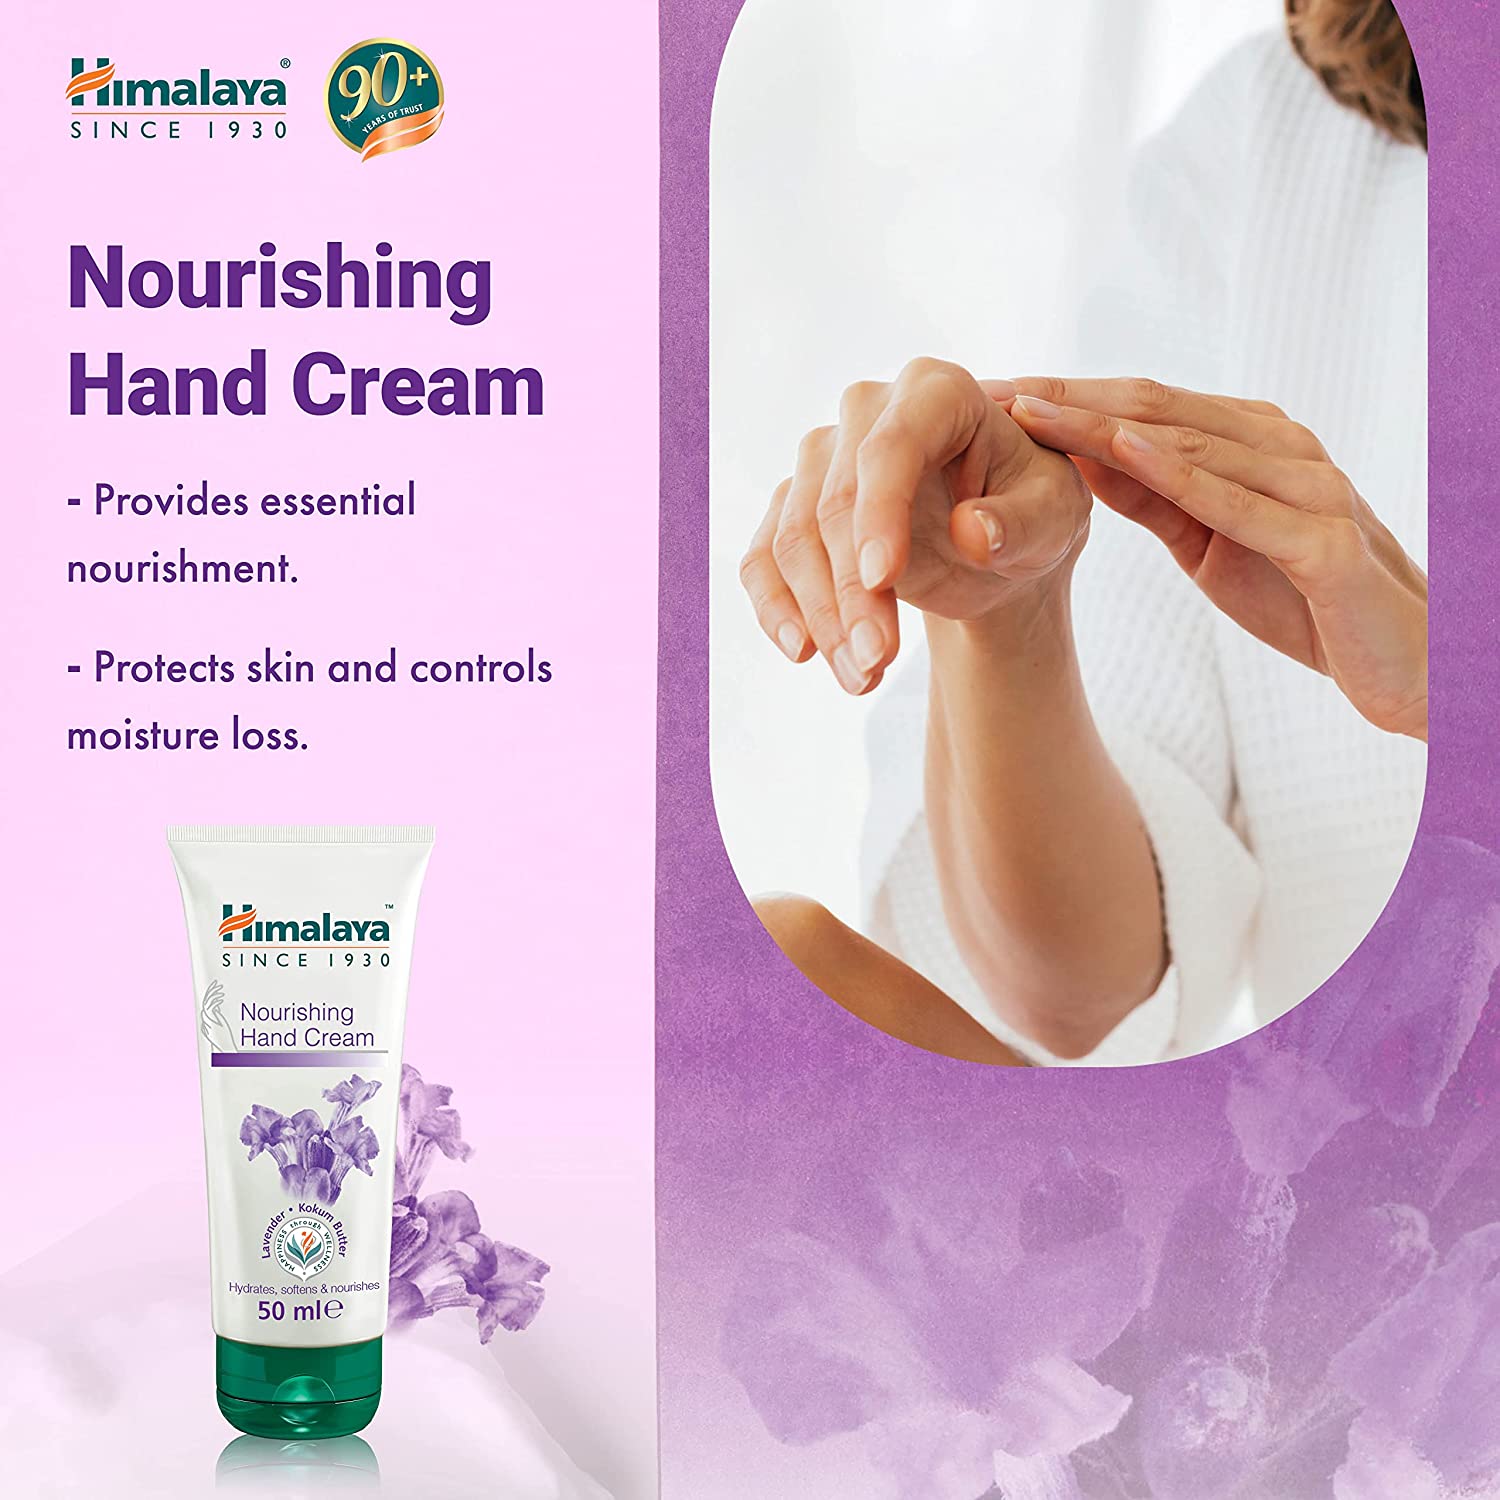 Himalaya Nourishing Hand Cream Benefits